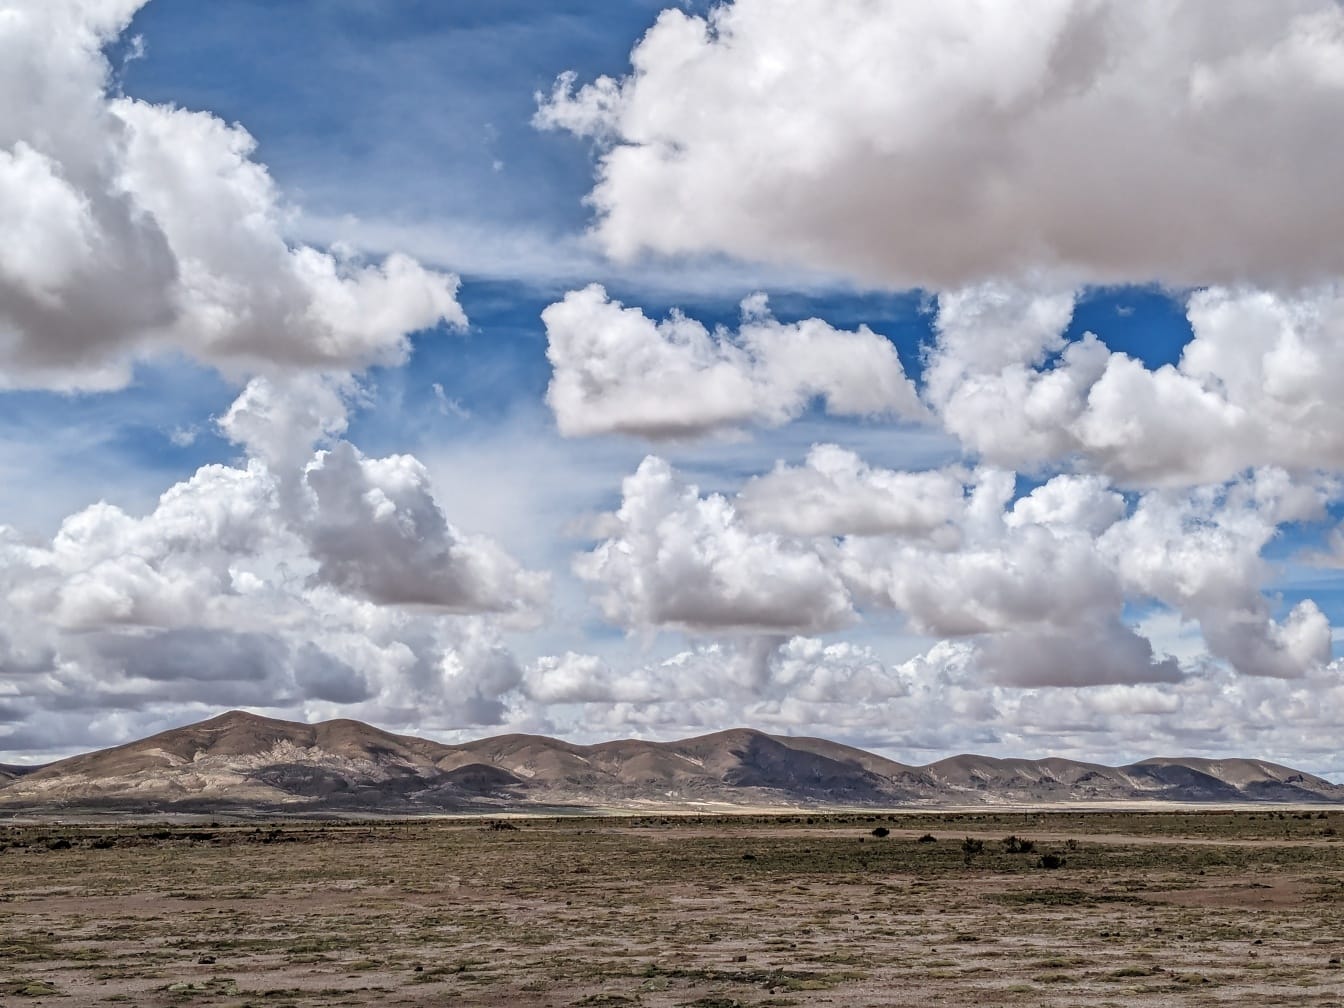 Lanskap gurun Amerika Latin dengan pegunungan dan awan